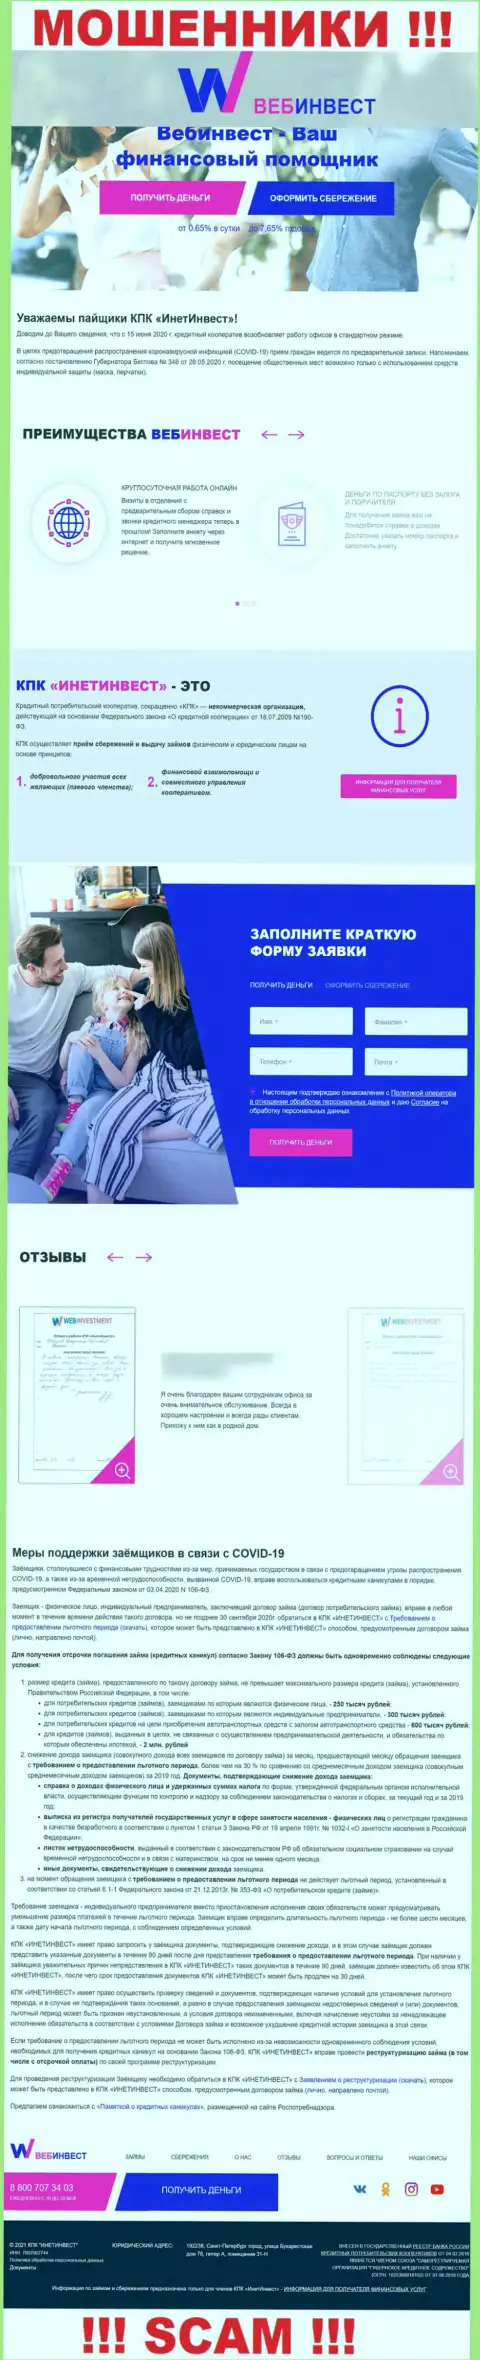 WebInvestment Ru - это официальный веб-ресурс интернет-мошенников ВебИнвест